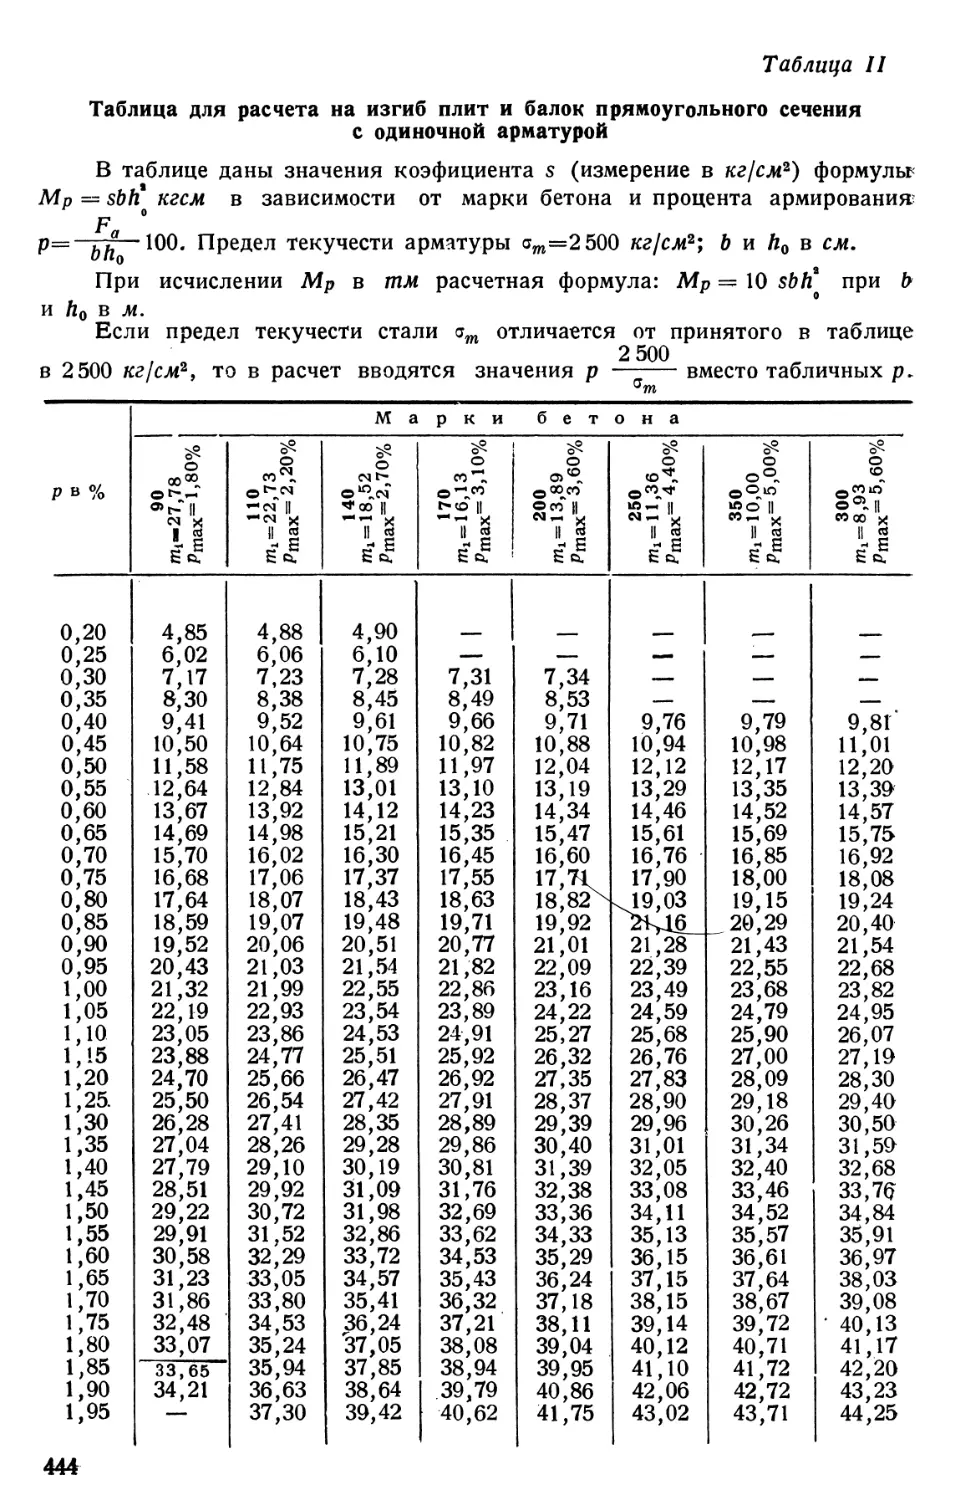 II. Таблица для расчета на изгиб плит и балок прямоугольного сечения с одиночной арматурой